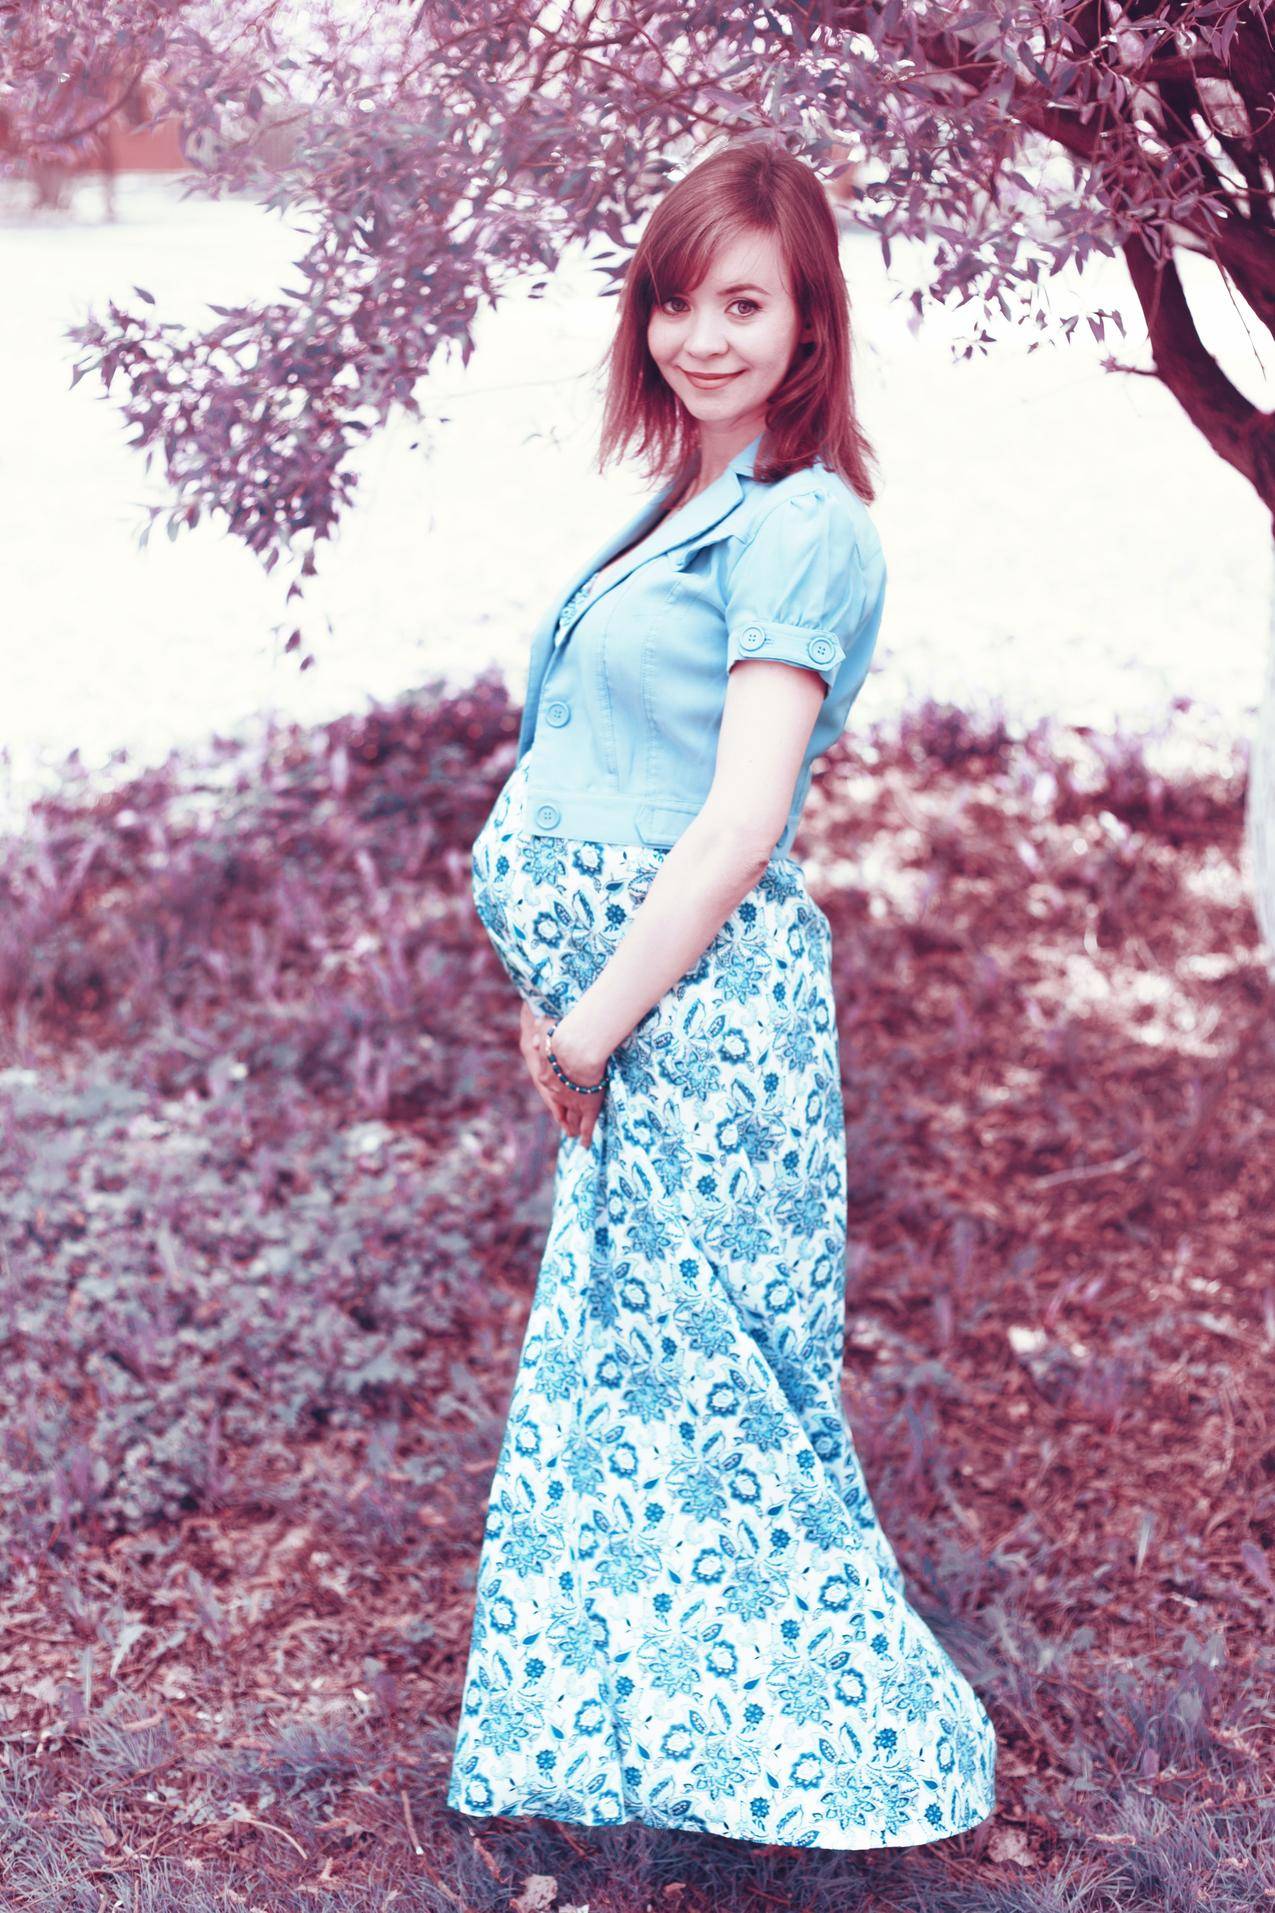 穿着蓝色孕妇装和White和蓝色花卉孕妇装的女人